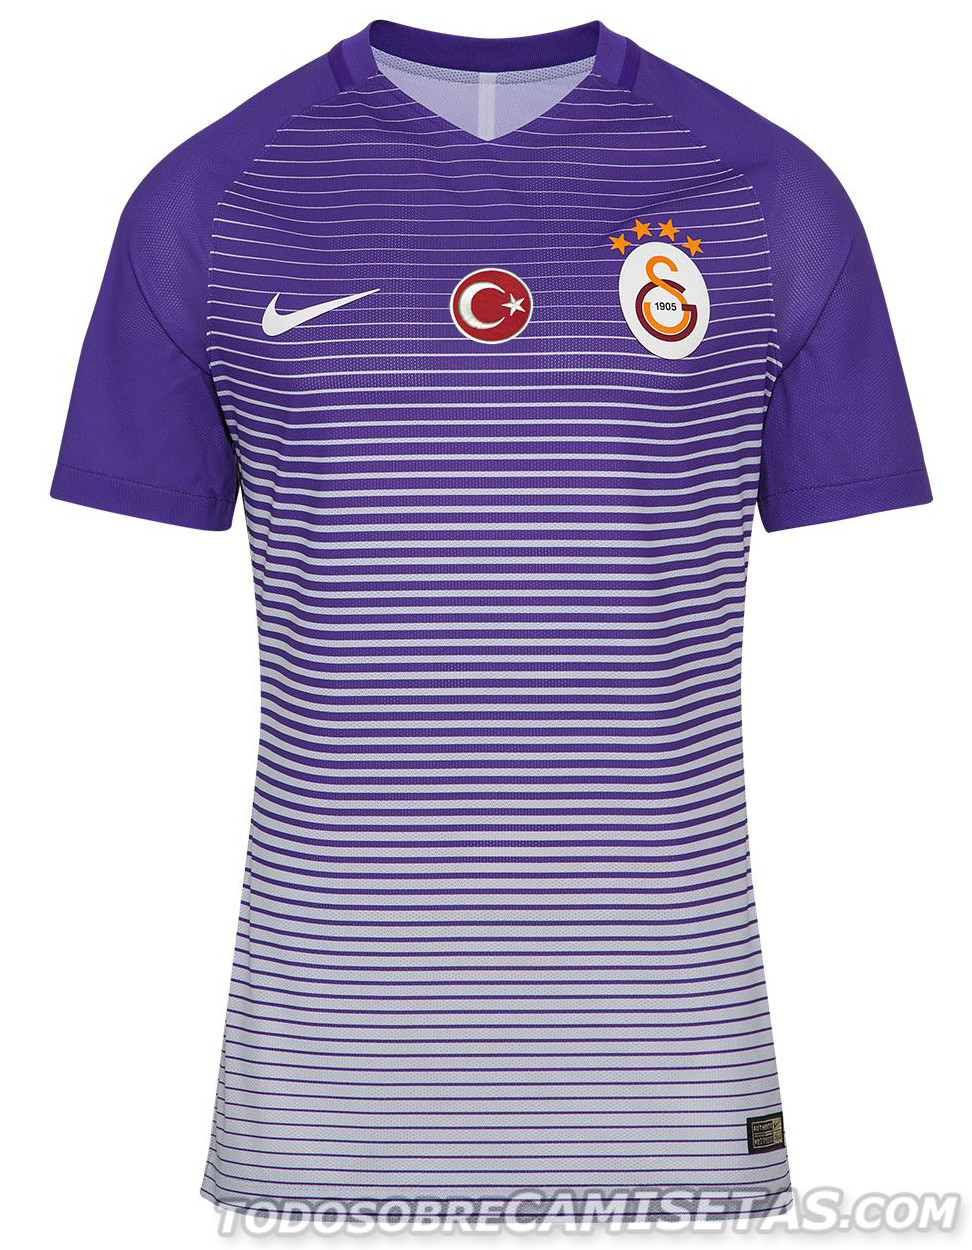 Galatasaray 2016-17 Nike Third Kit